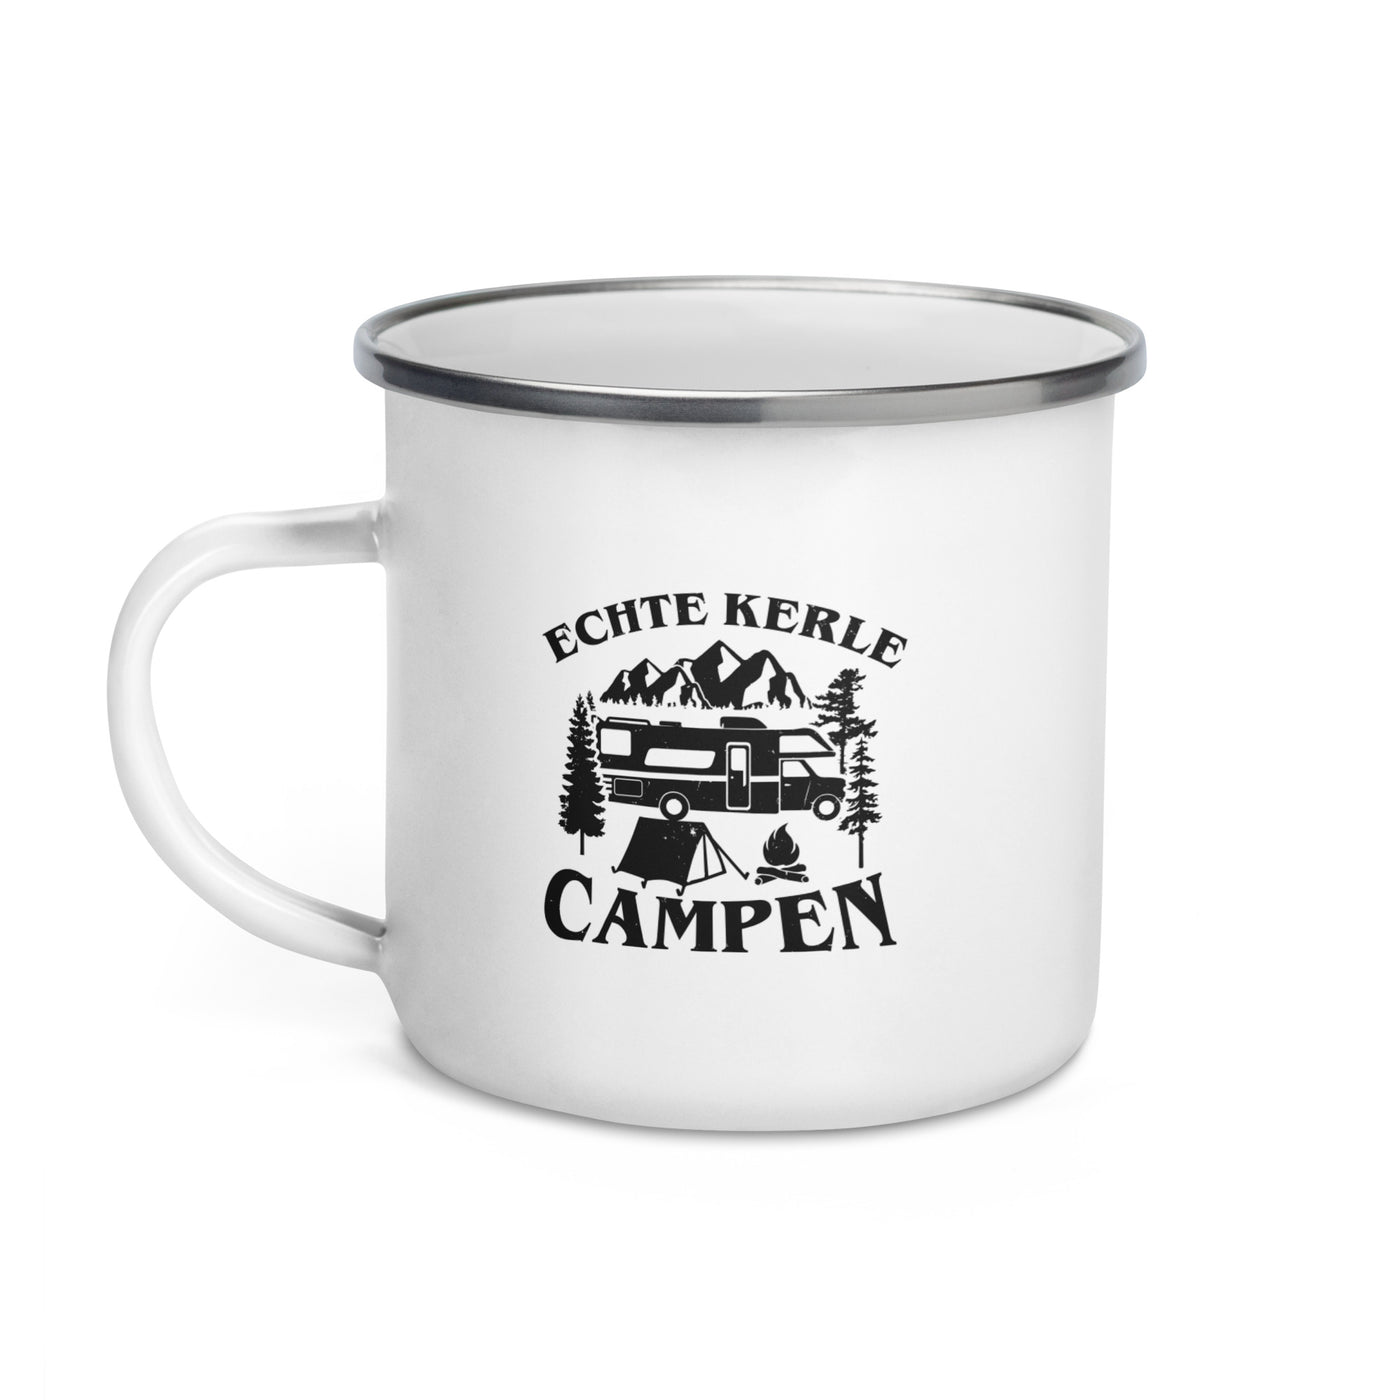 Echte Kerle Campen - Emaille Tasse camping